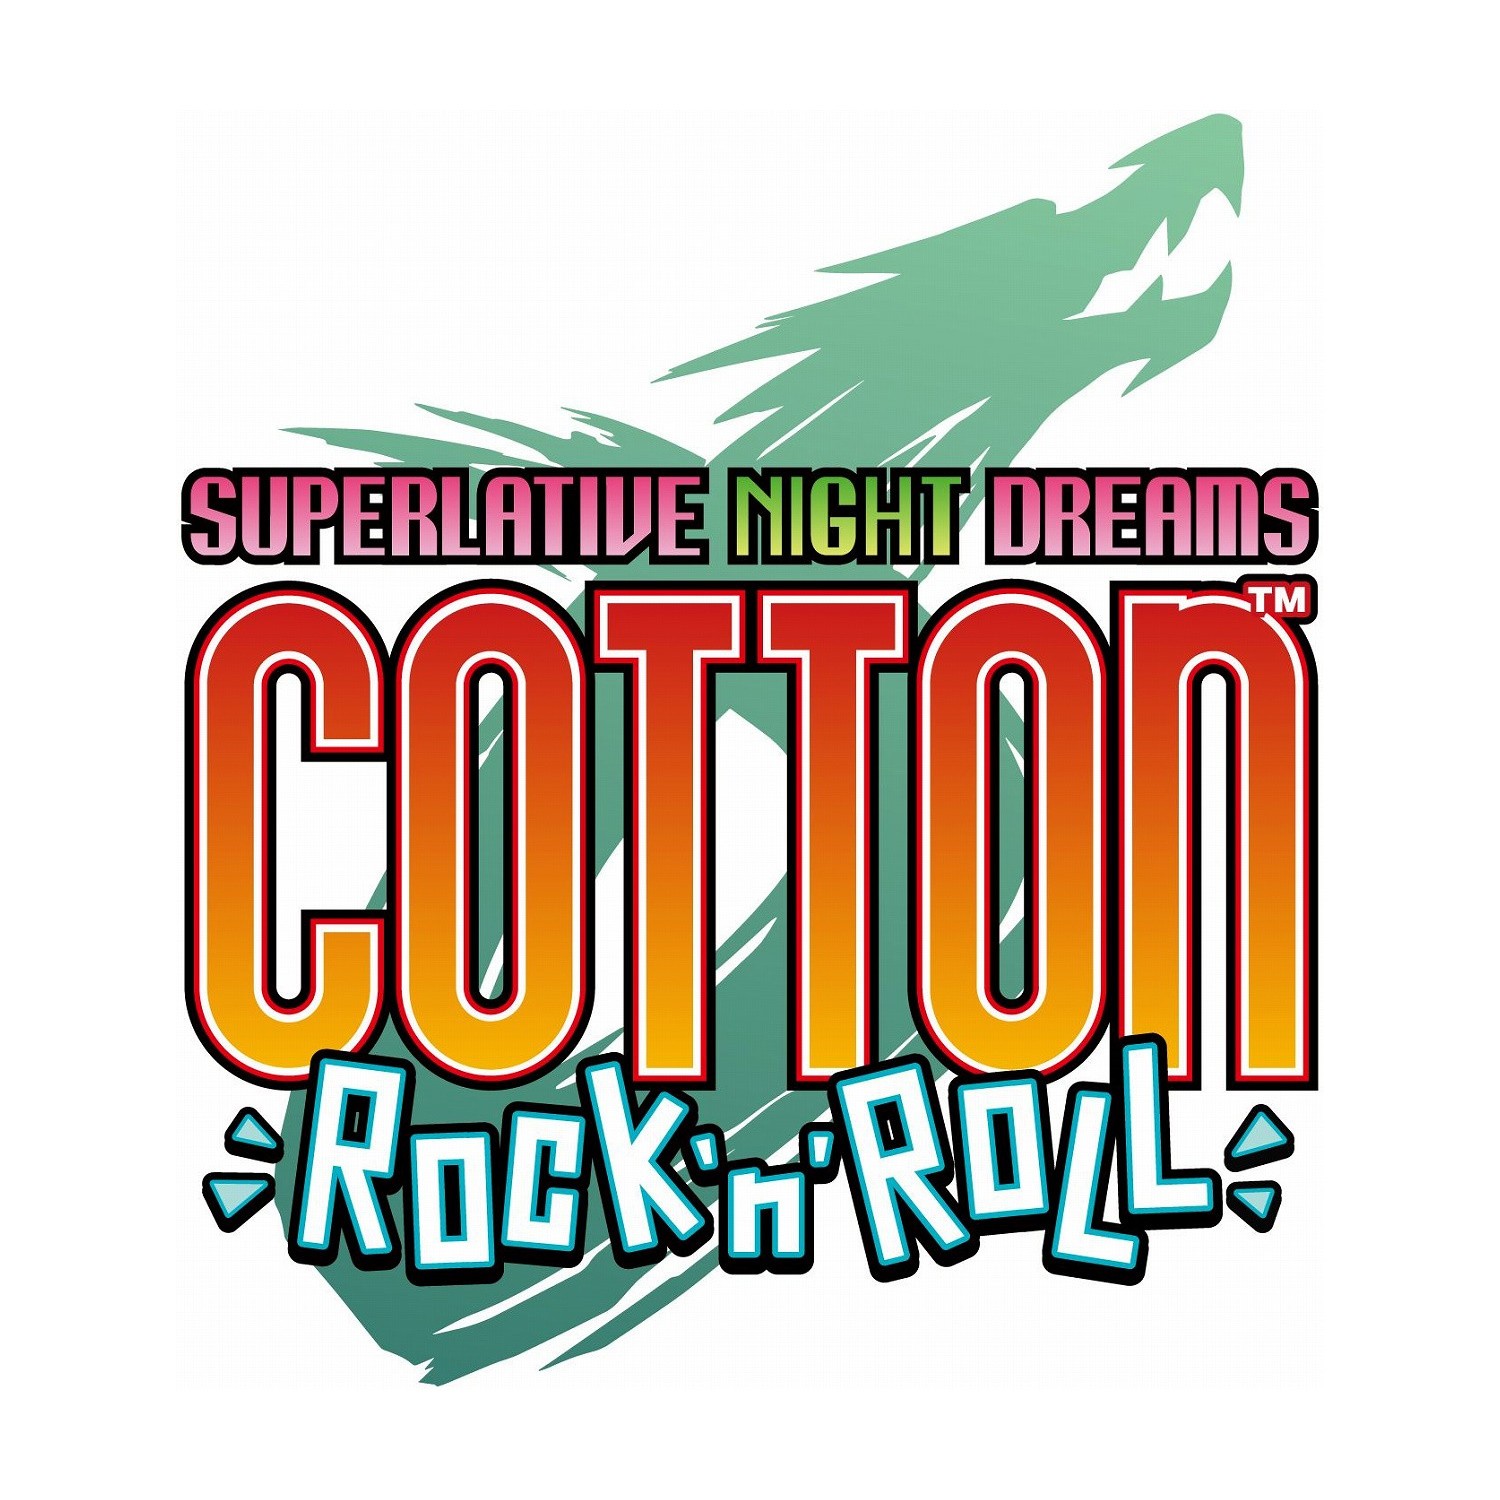 經典可愛風射擊遊戲新作《小魔女 Cotton 搖滾》12 月登場 海腹川背跨刀參戰